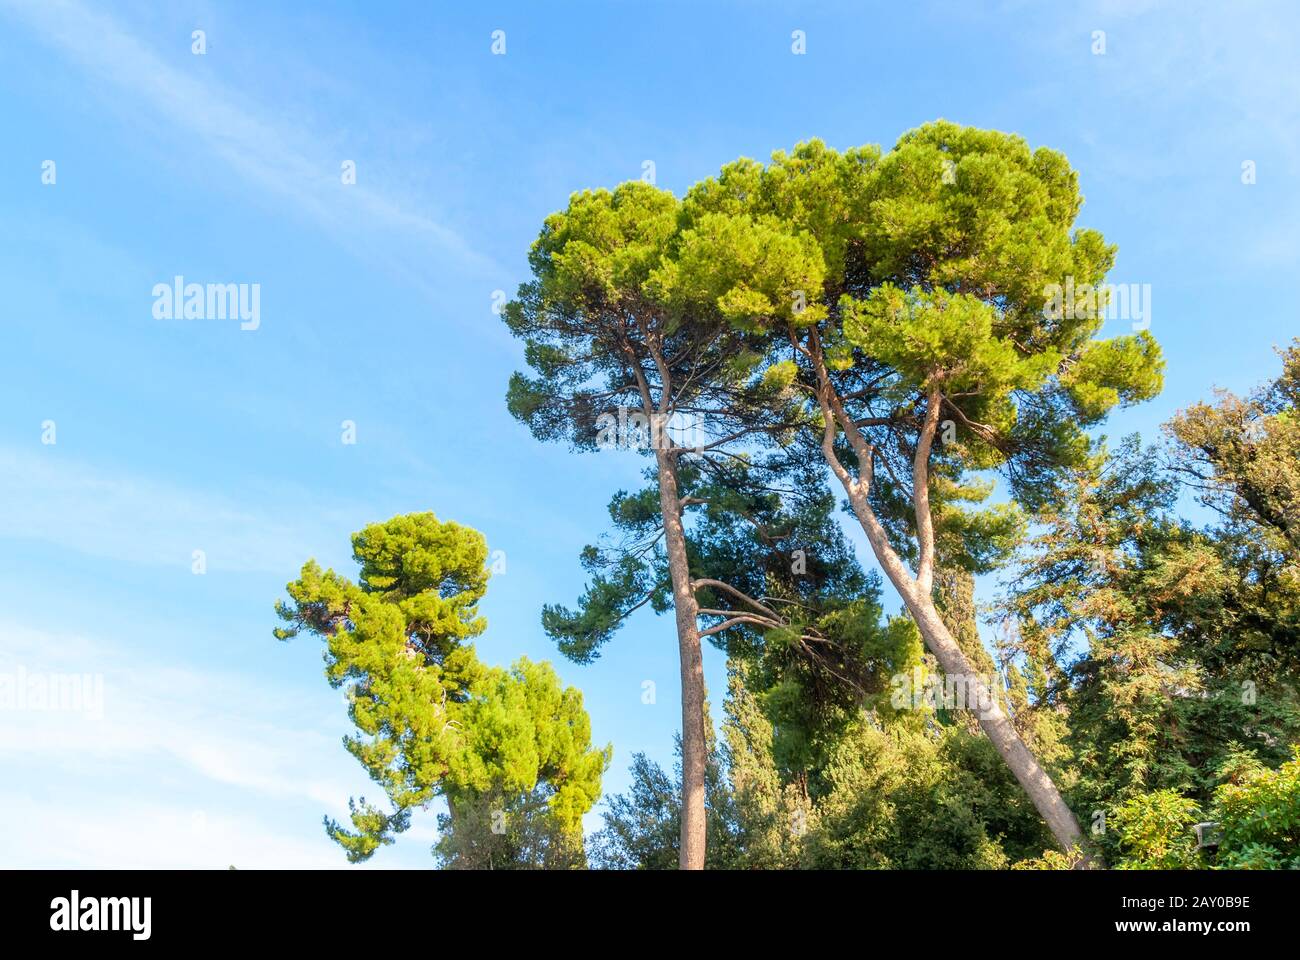 The stone pine, botanical name Pinus pinea, also known as the Italian stone pine, umbrella pine and parasol pine. Stock Photo